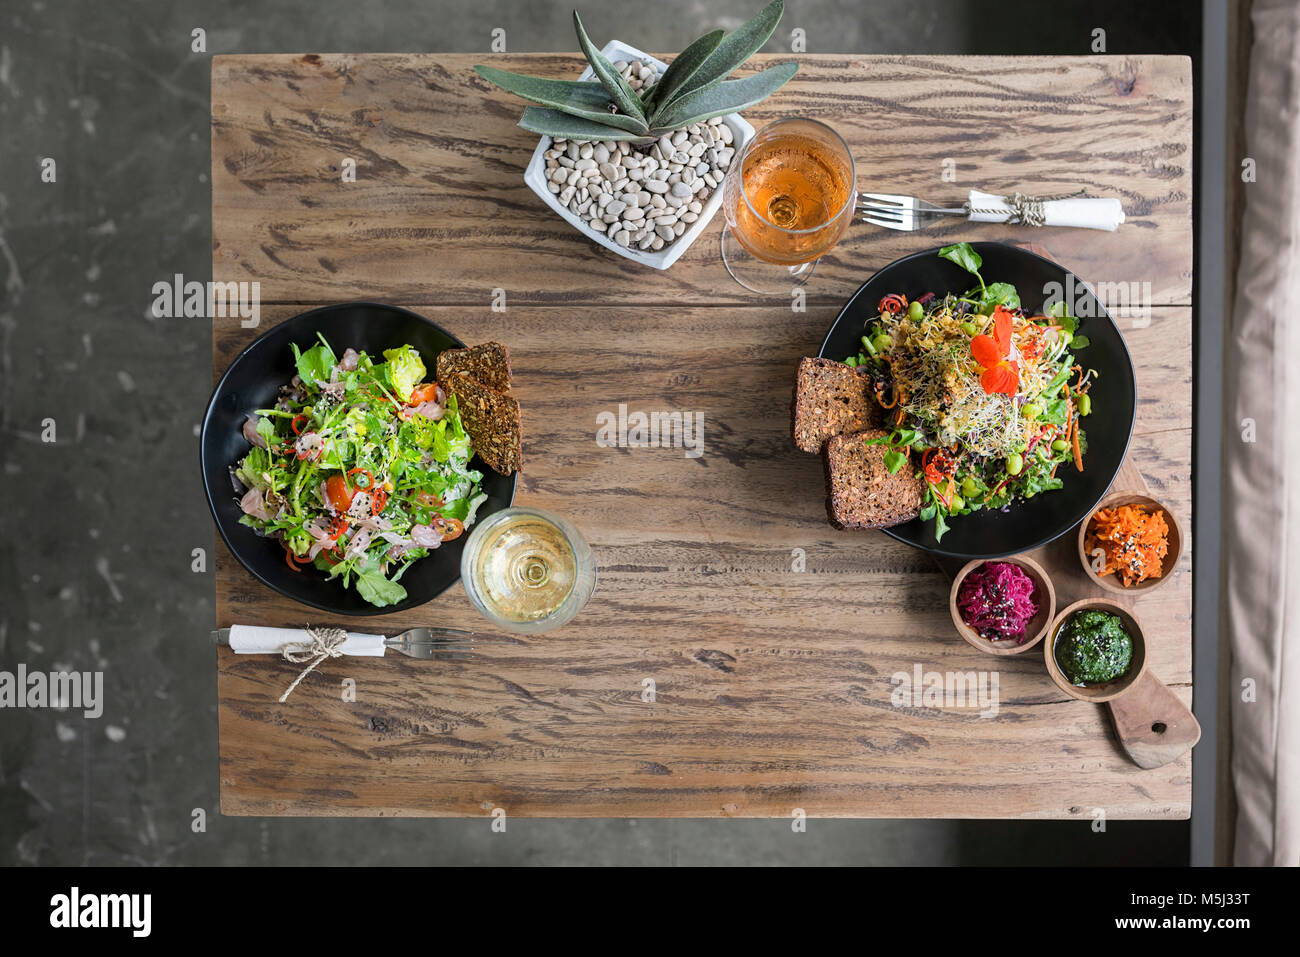 Dekoriert salat Schüsseln auf hölzernen Tisch mit Gläsern Wein Stockfoto